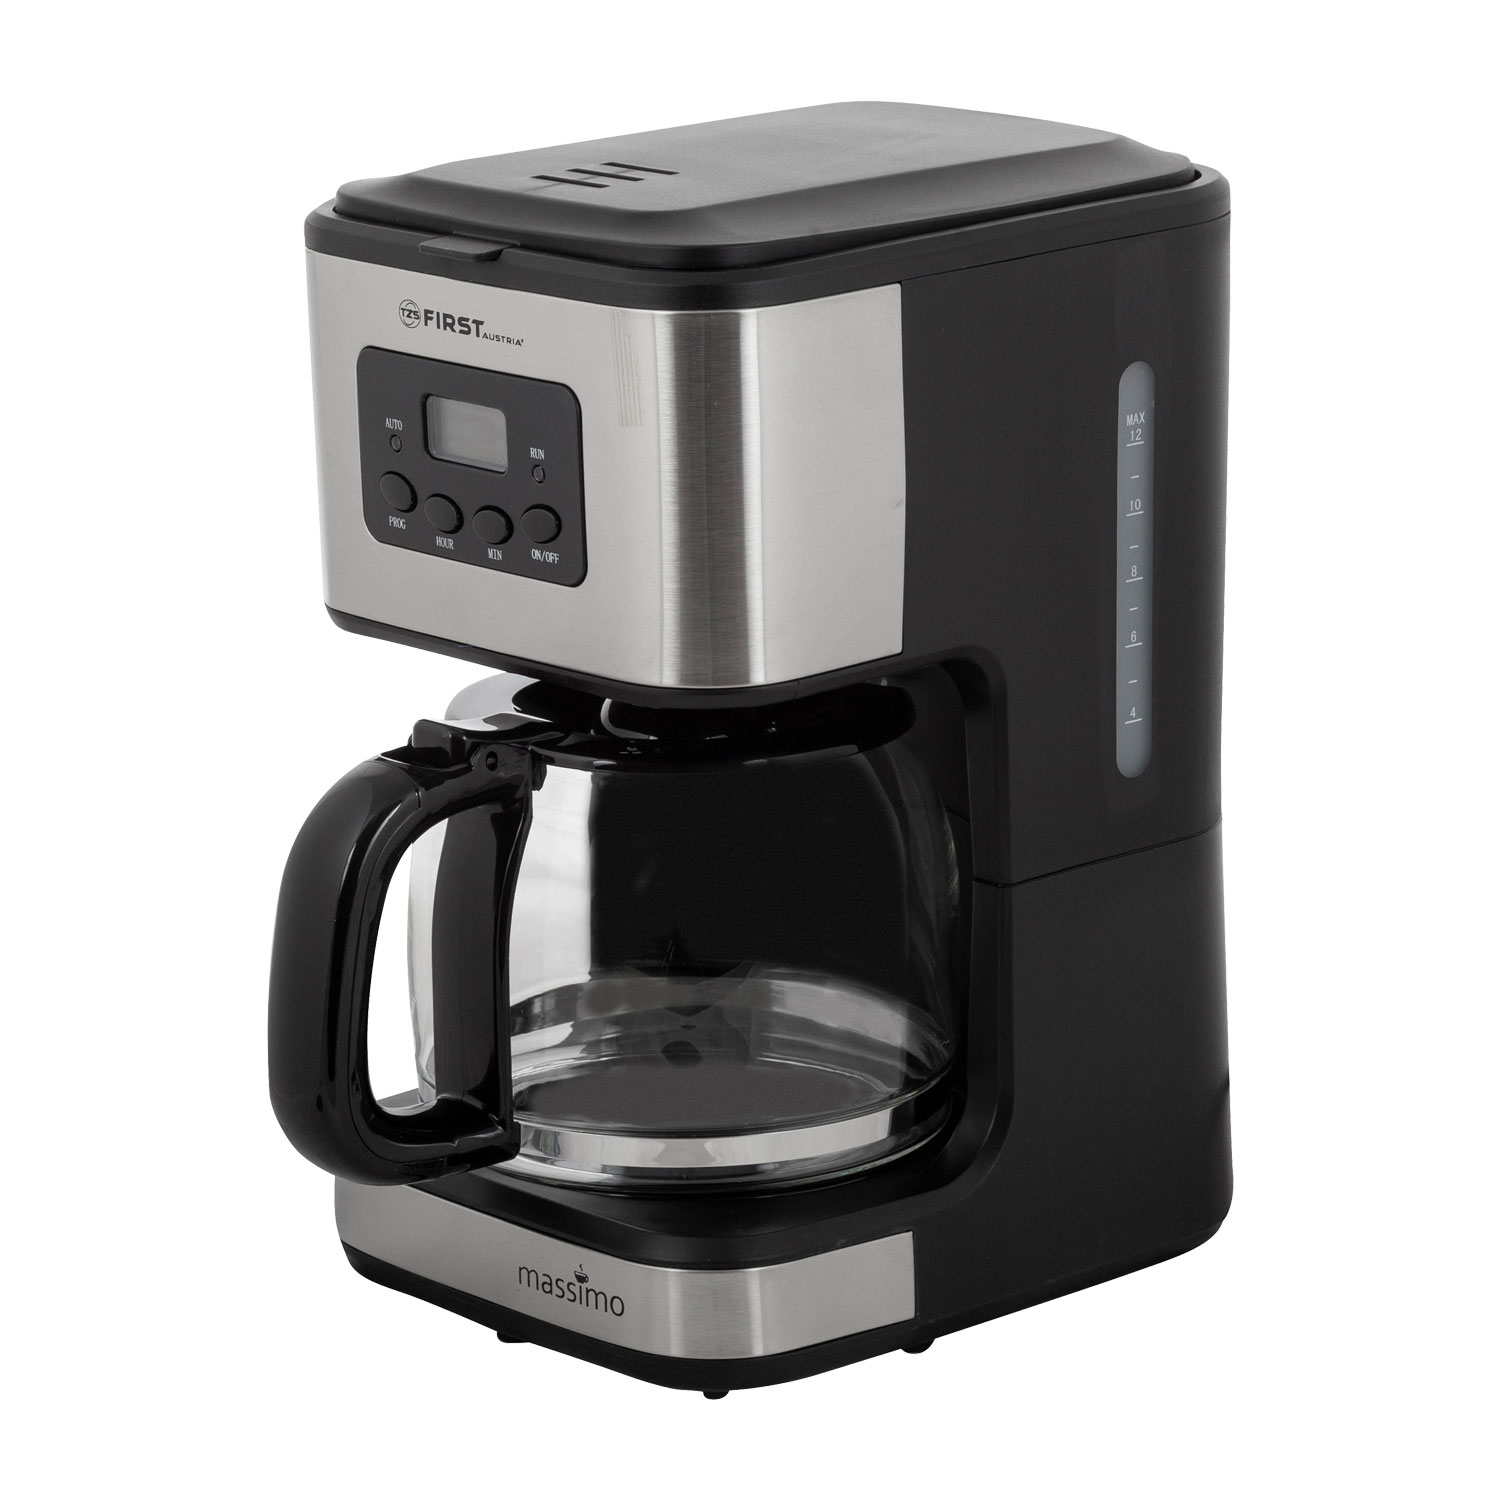 Cafetera espresso manual 15 bares 1,6 l, braz adler ad 4404cr cobre 850w